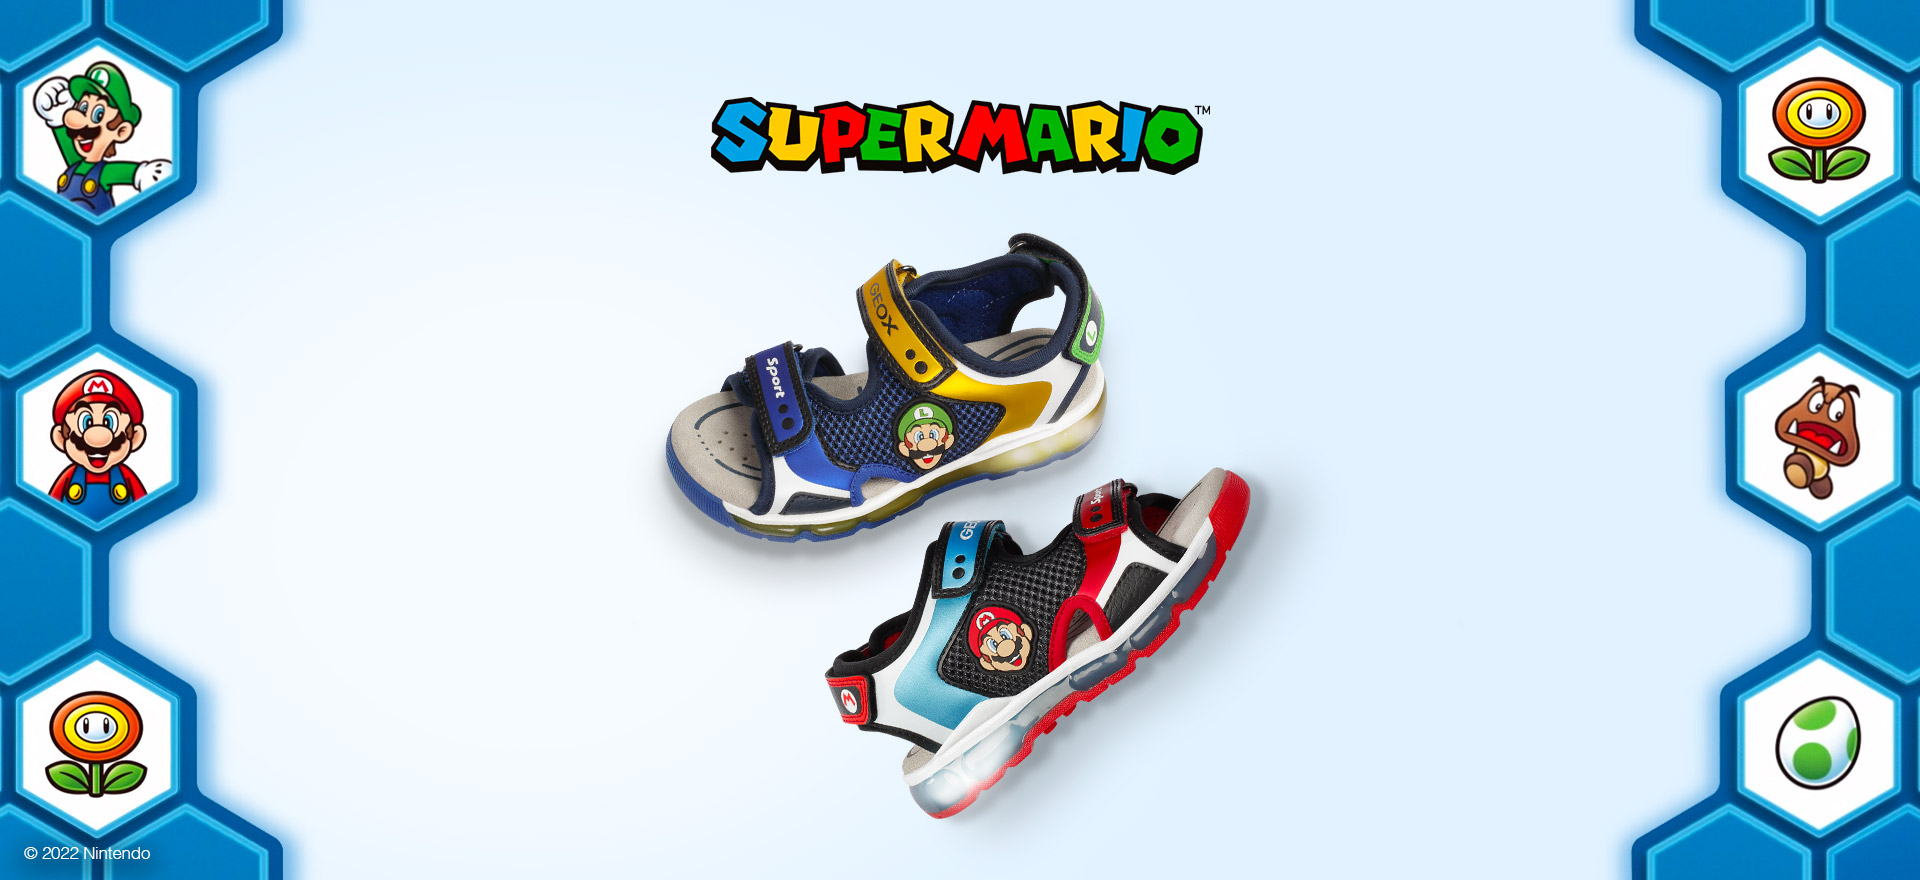 Apéndice Brillante es suficiente Geox® Zapatos Nintendo Super Mario | Edición especial